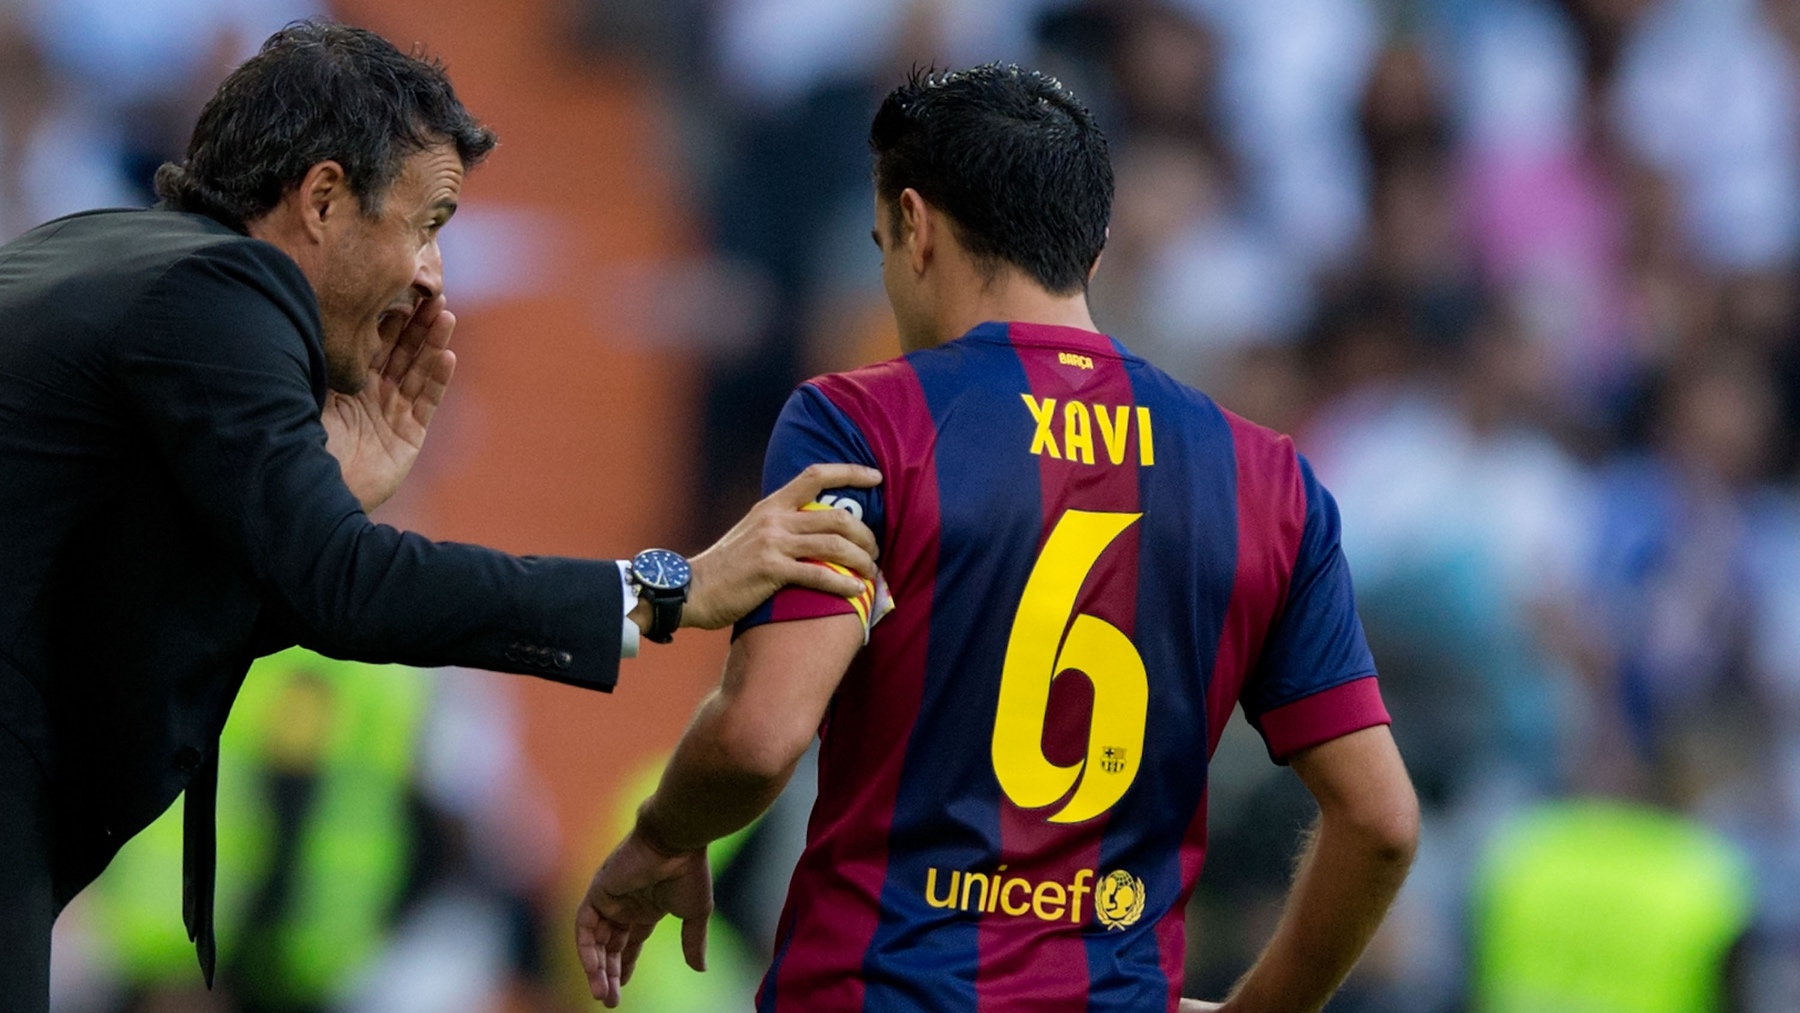 Luis Enrique da órdenes a Xavi en un partido del Barcelona. (Getty)